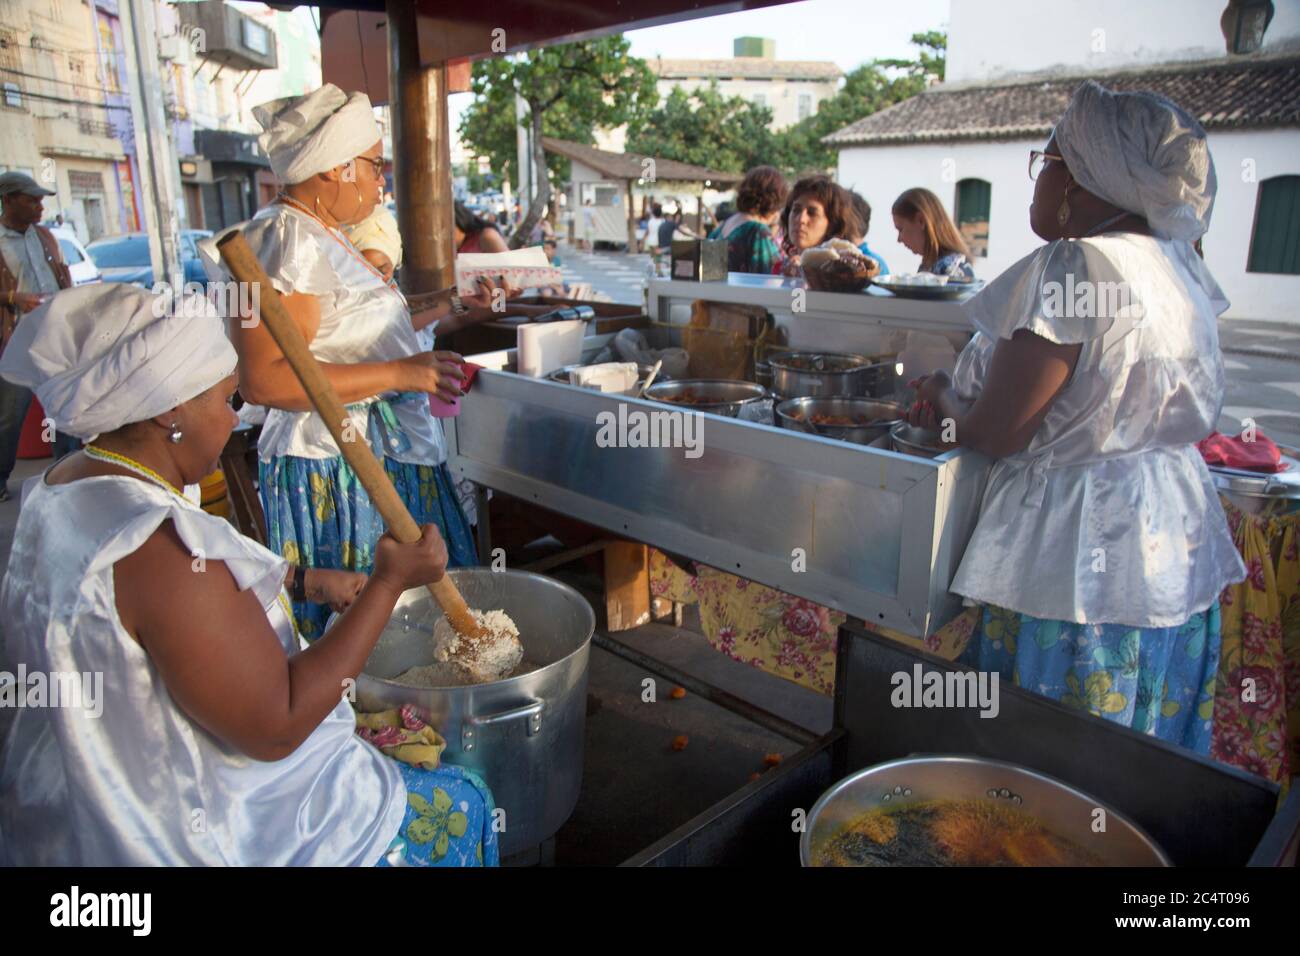 Straßenverkäufer, die bekannt sind, machen Acarajé, ein Gericht aus pürierten und gebratenen Erbsen mit schwarzen Augen, gefüllt mit Garnelen in Salvador de Bahia, Brasilien. Stockfoto